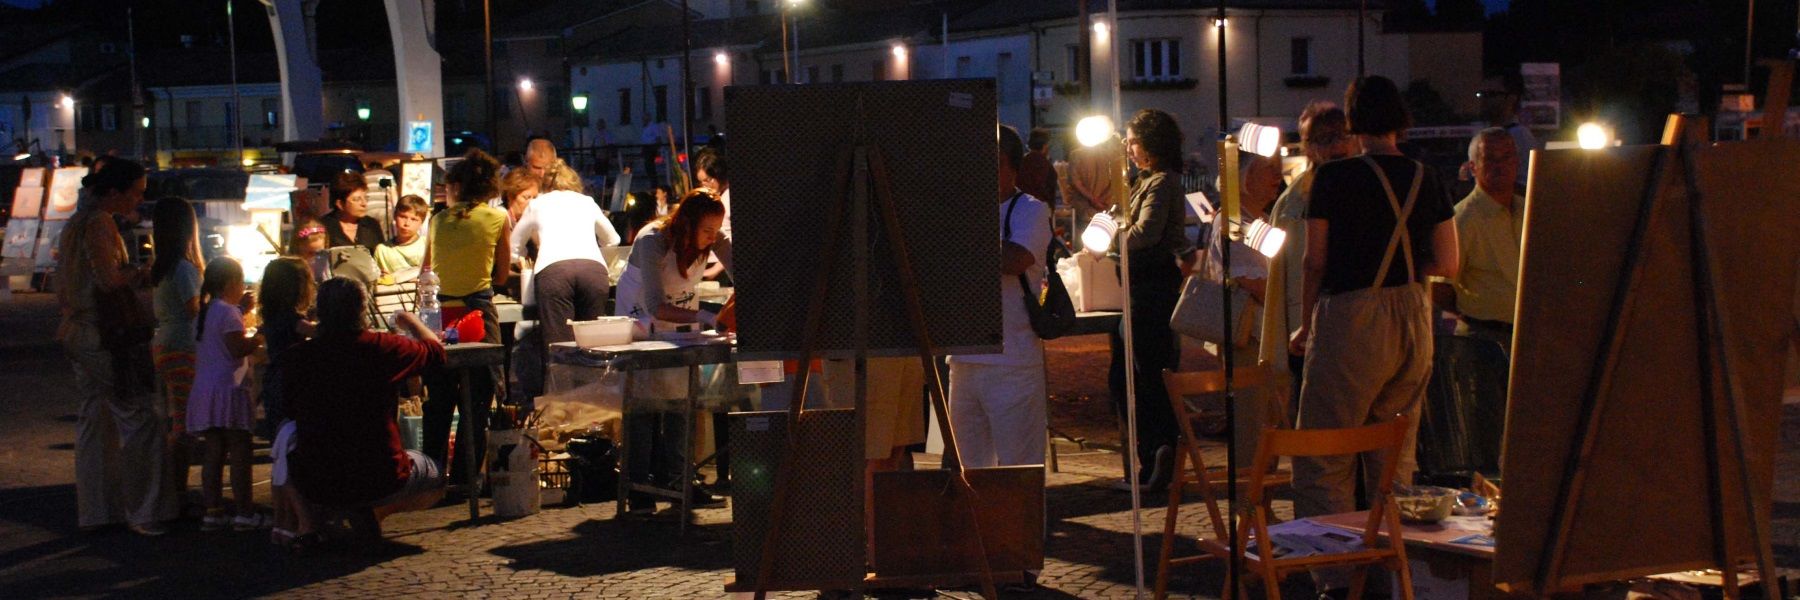 Festival des arts, créations en direct sur la Piazzale dei Salinari